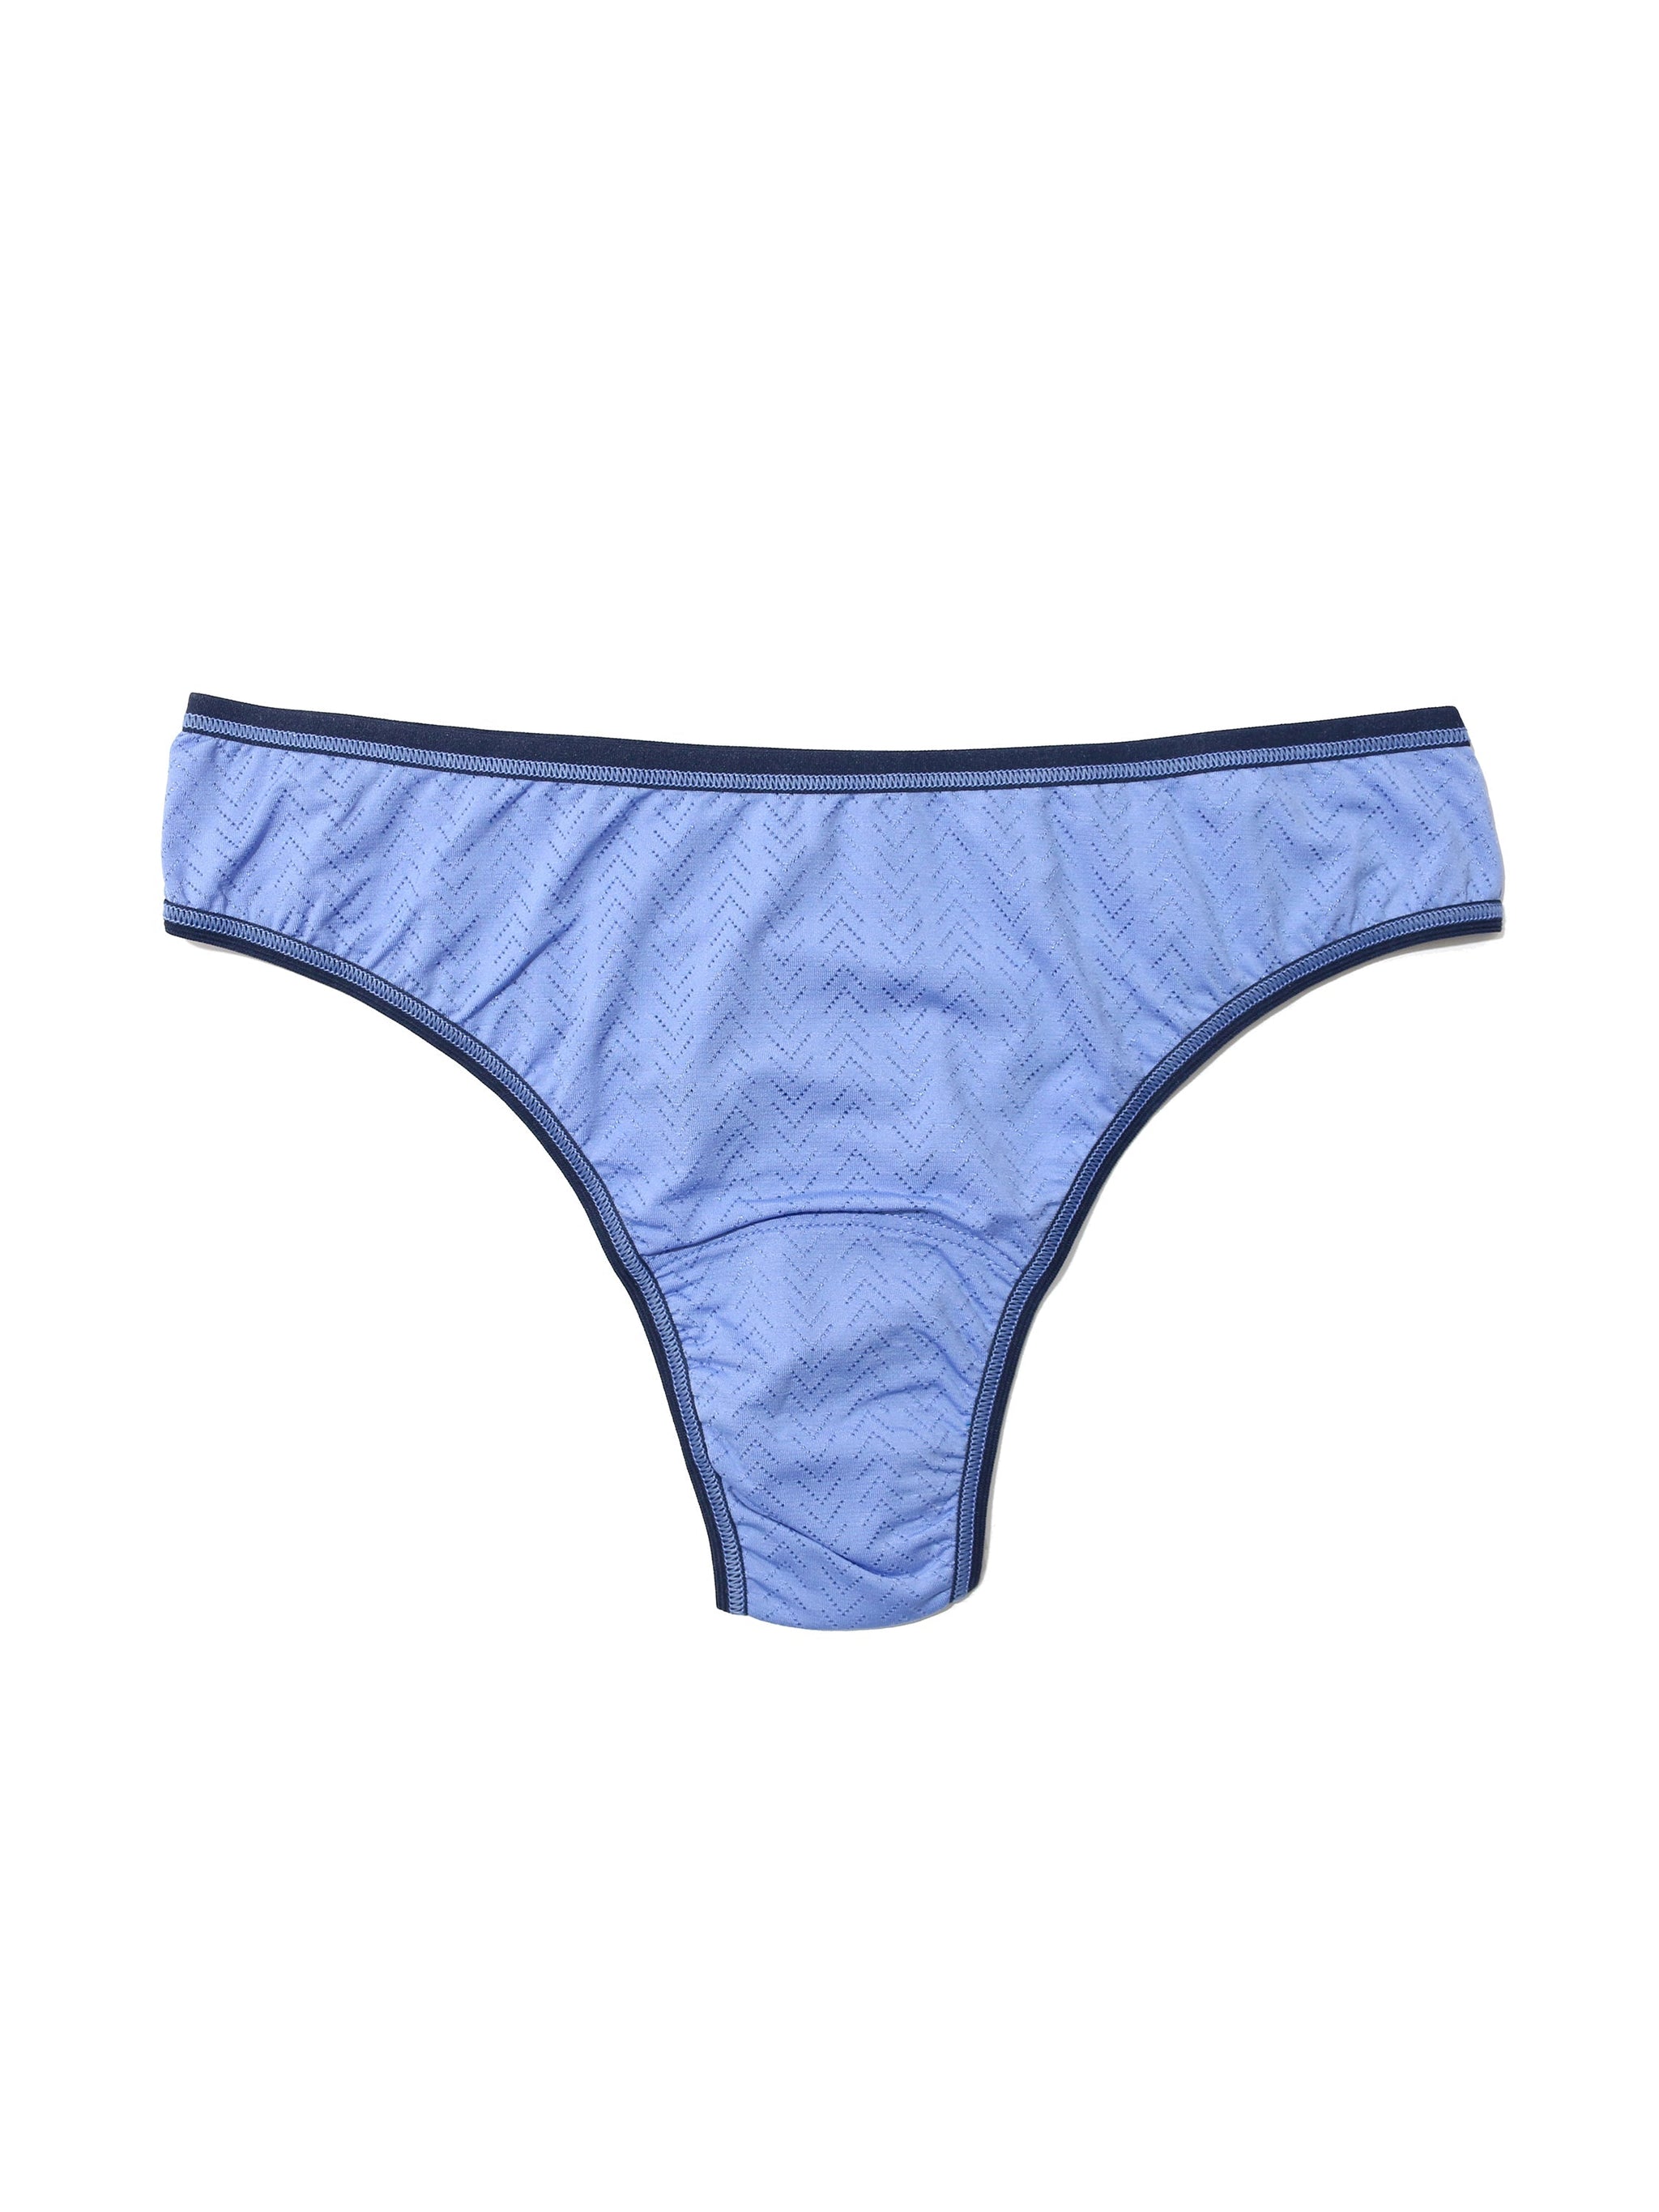 2 6 12 Pcs Lot Women's Cotton Briefs Underwear Sweet Floral Everday  Panty,XS S M